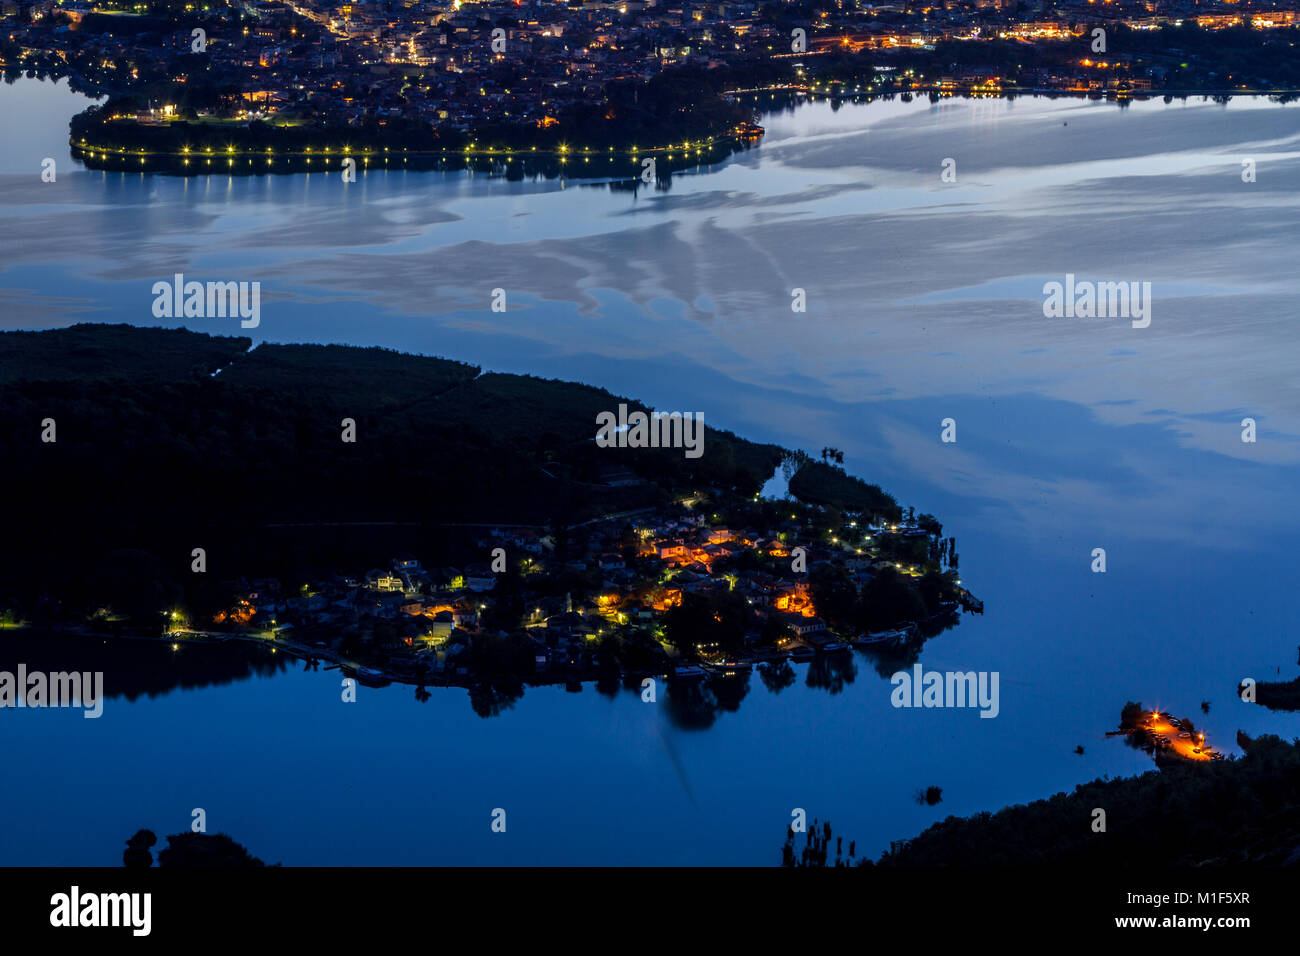 Panoramablick auf See und Ioannina Nisaki, die bewohnte Insel in der Mitte des Sees, in der Region Epirus, Griechenland. Stockfoto